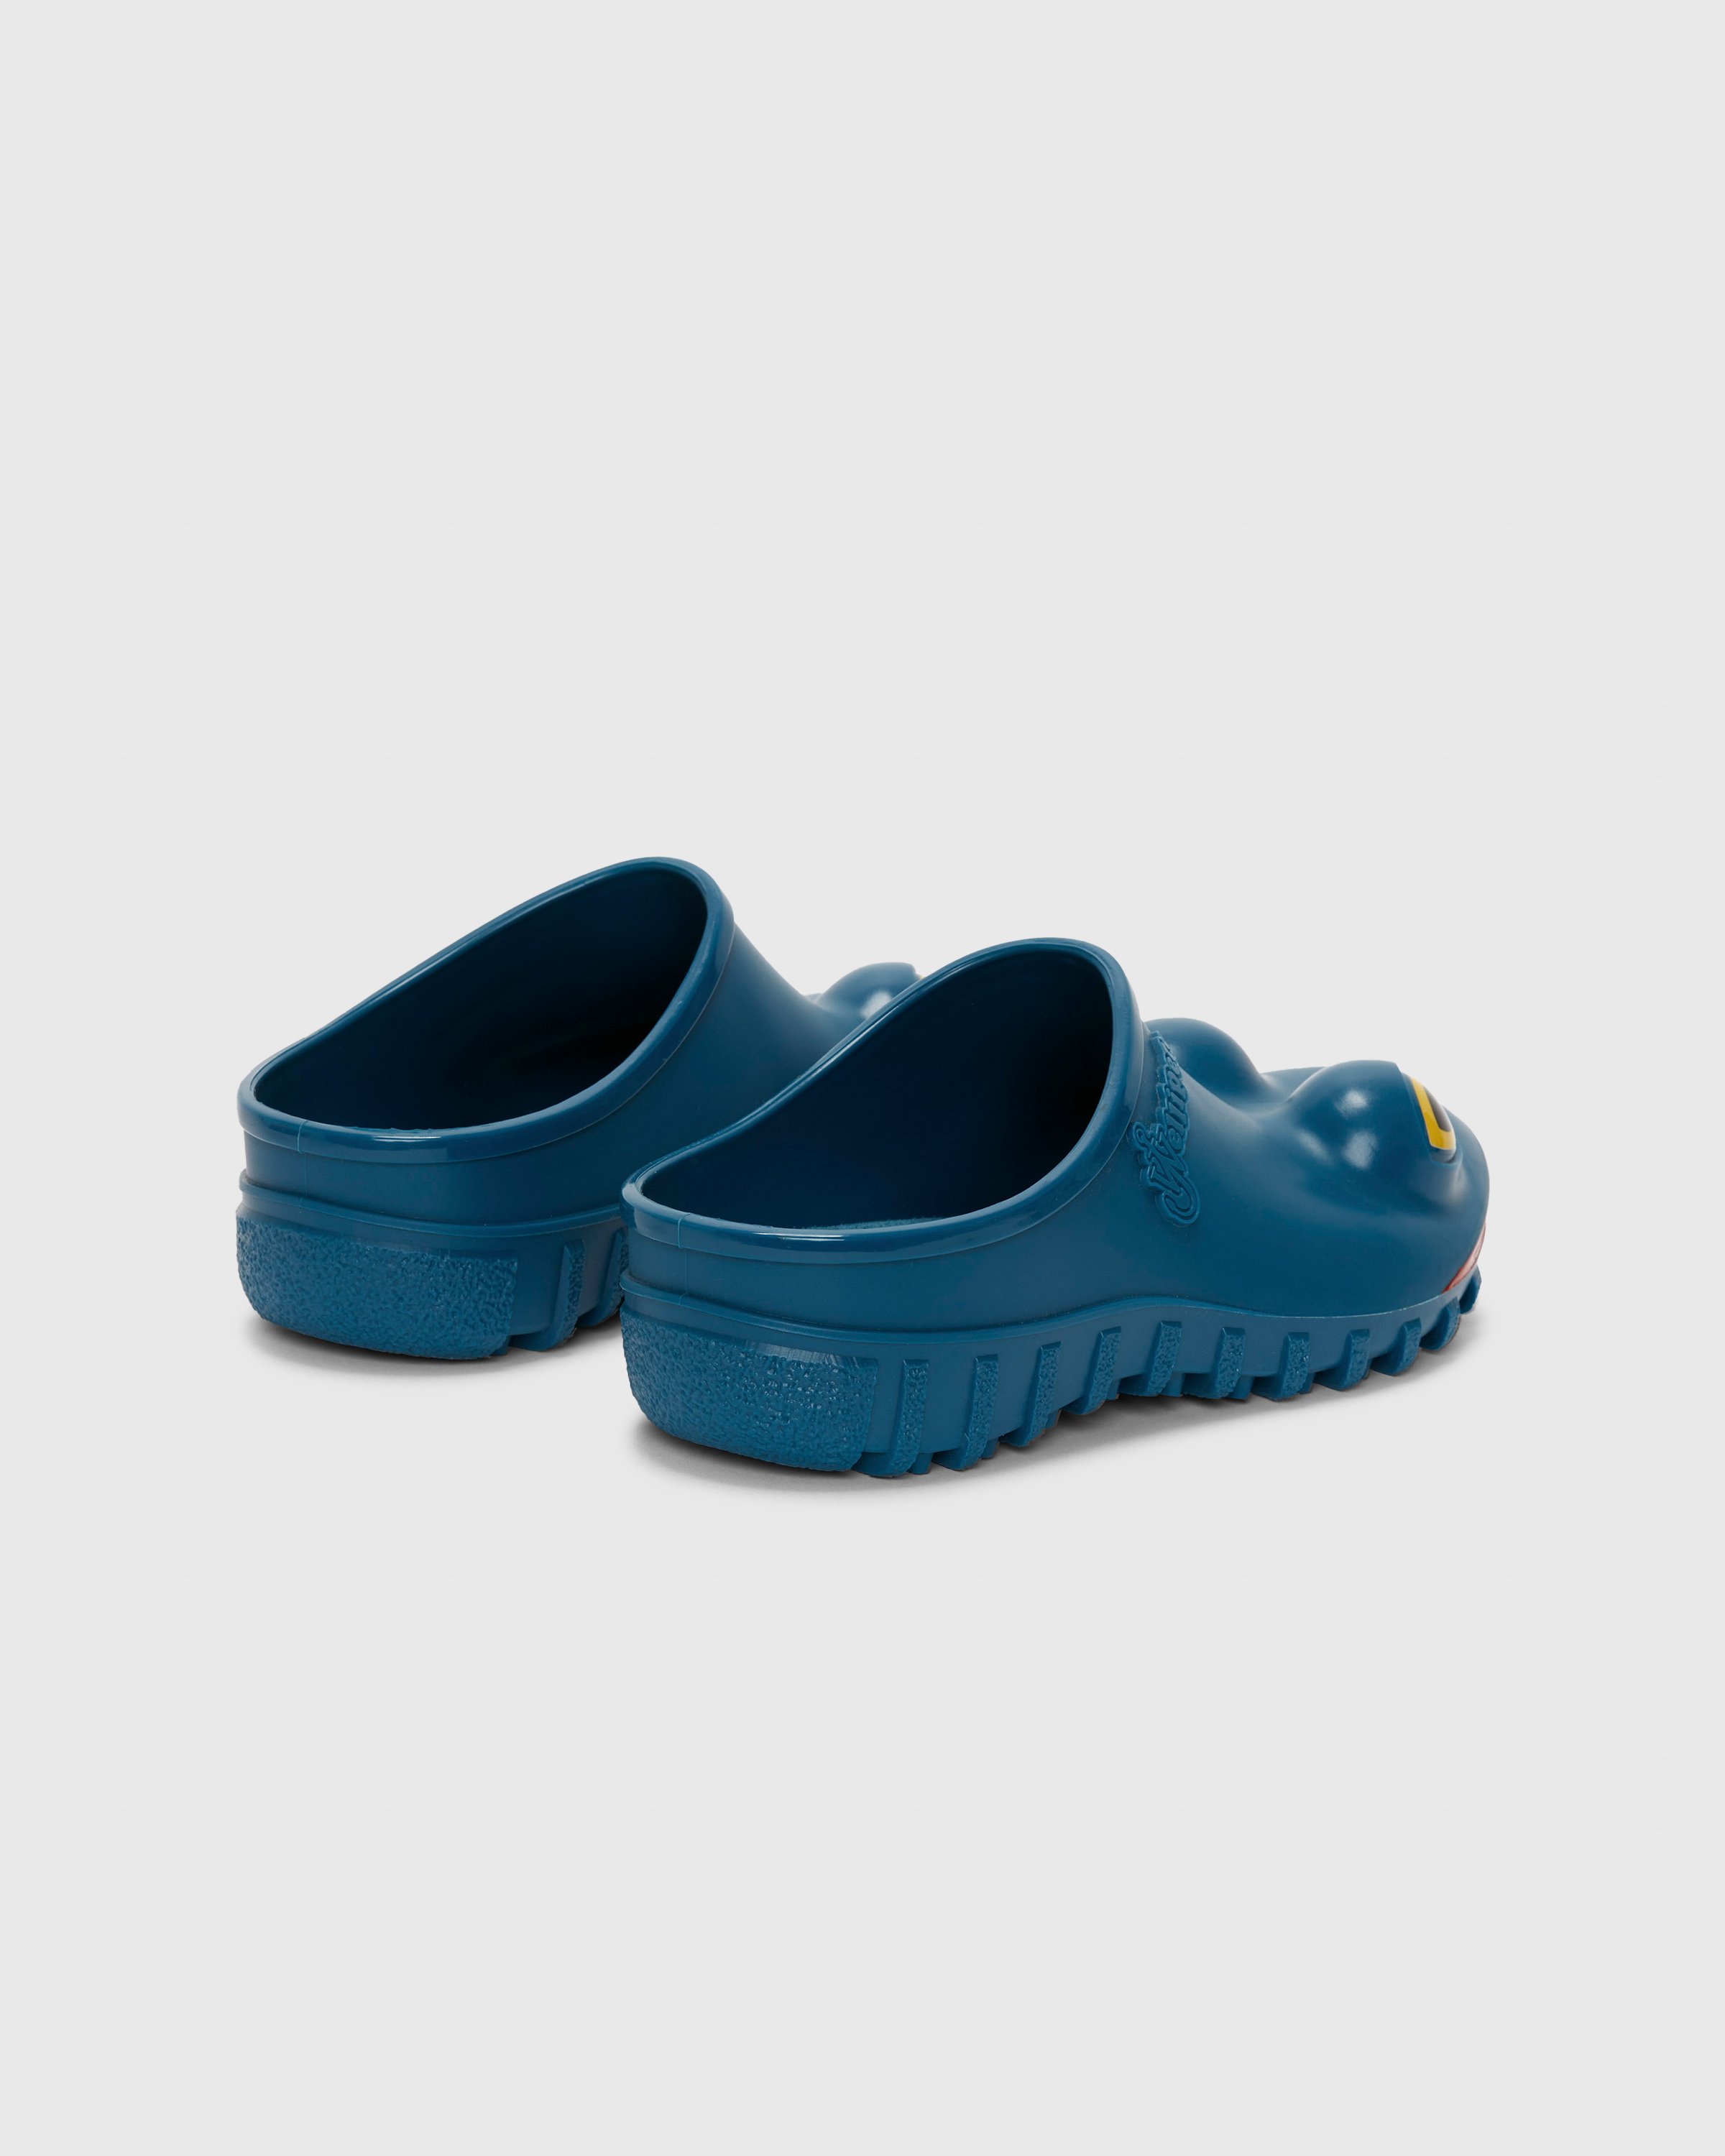 J.W. Anderson x Wellipets - Frog Loafer Blue - Footwear - Blue - Image 3